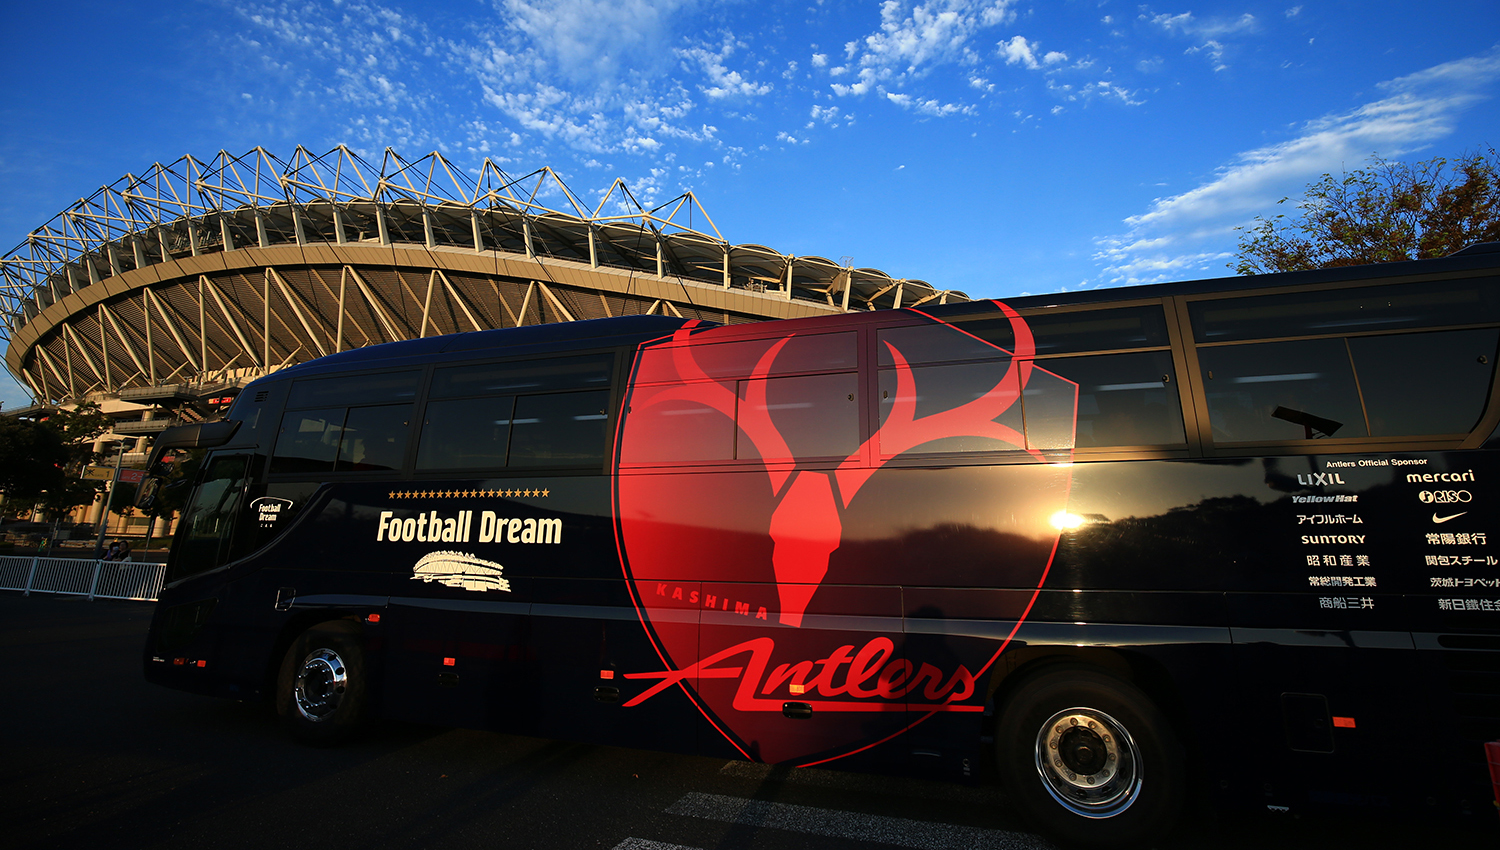 アントラーズ選手バスに乗車できる 選手なりきり体験ツアー プレミアムバスツアー販売開始 アントラーズホームタウンdmo